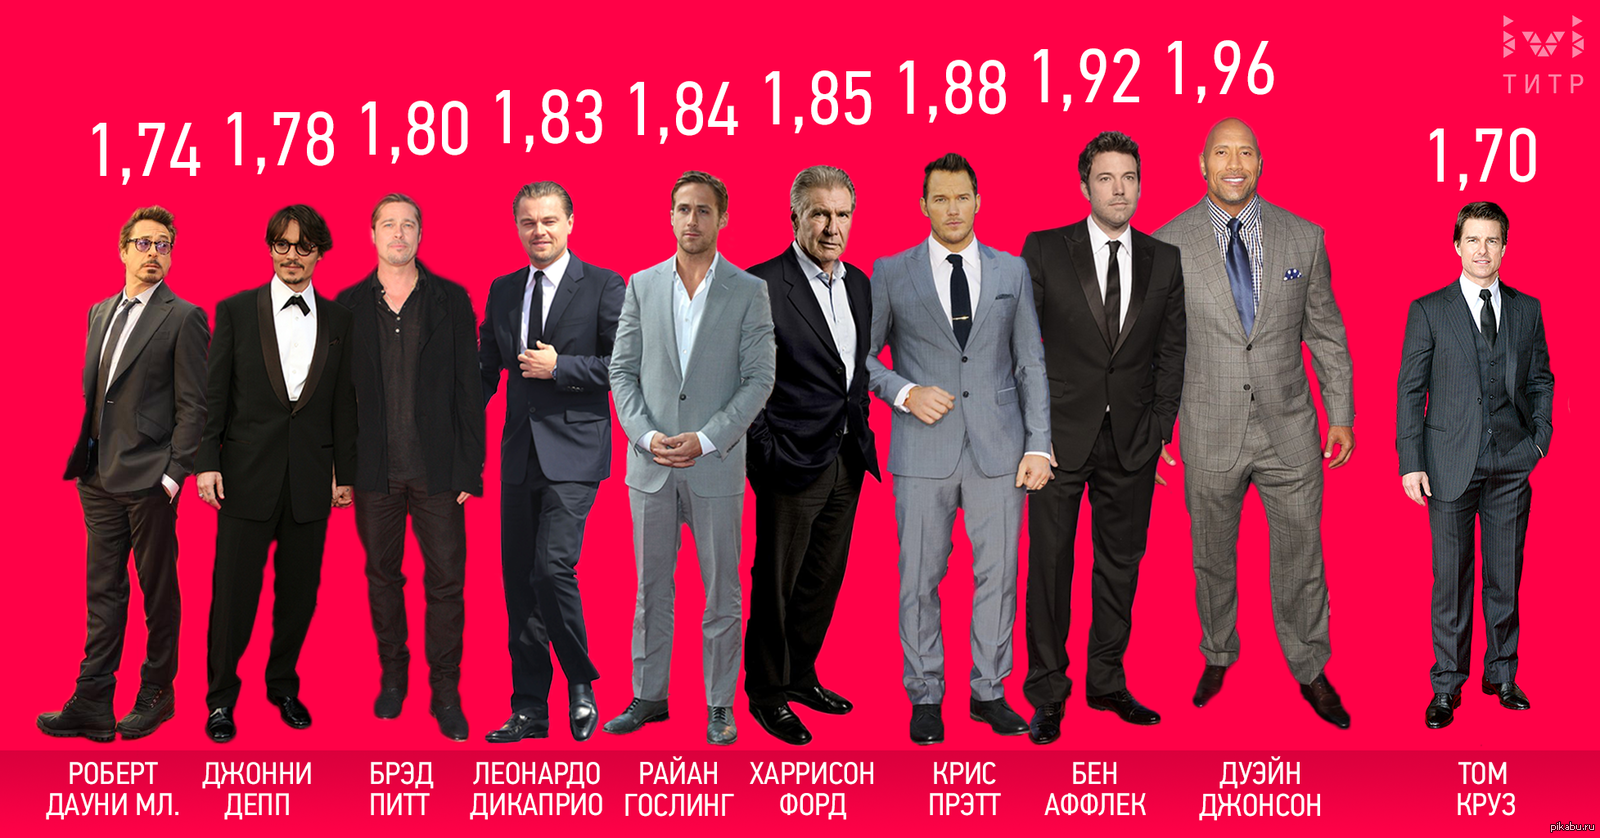 5 футов 5 дюймов рост человека. Рост знаменитостей мужчин. Сравнение роста актеров. Рост актеров Голливуда.